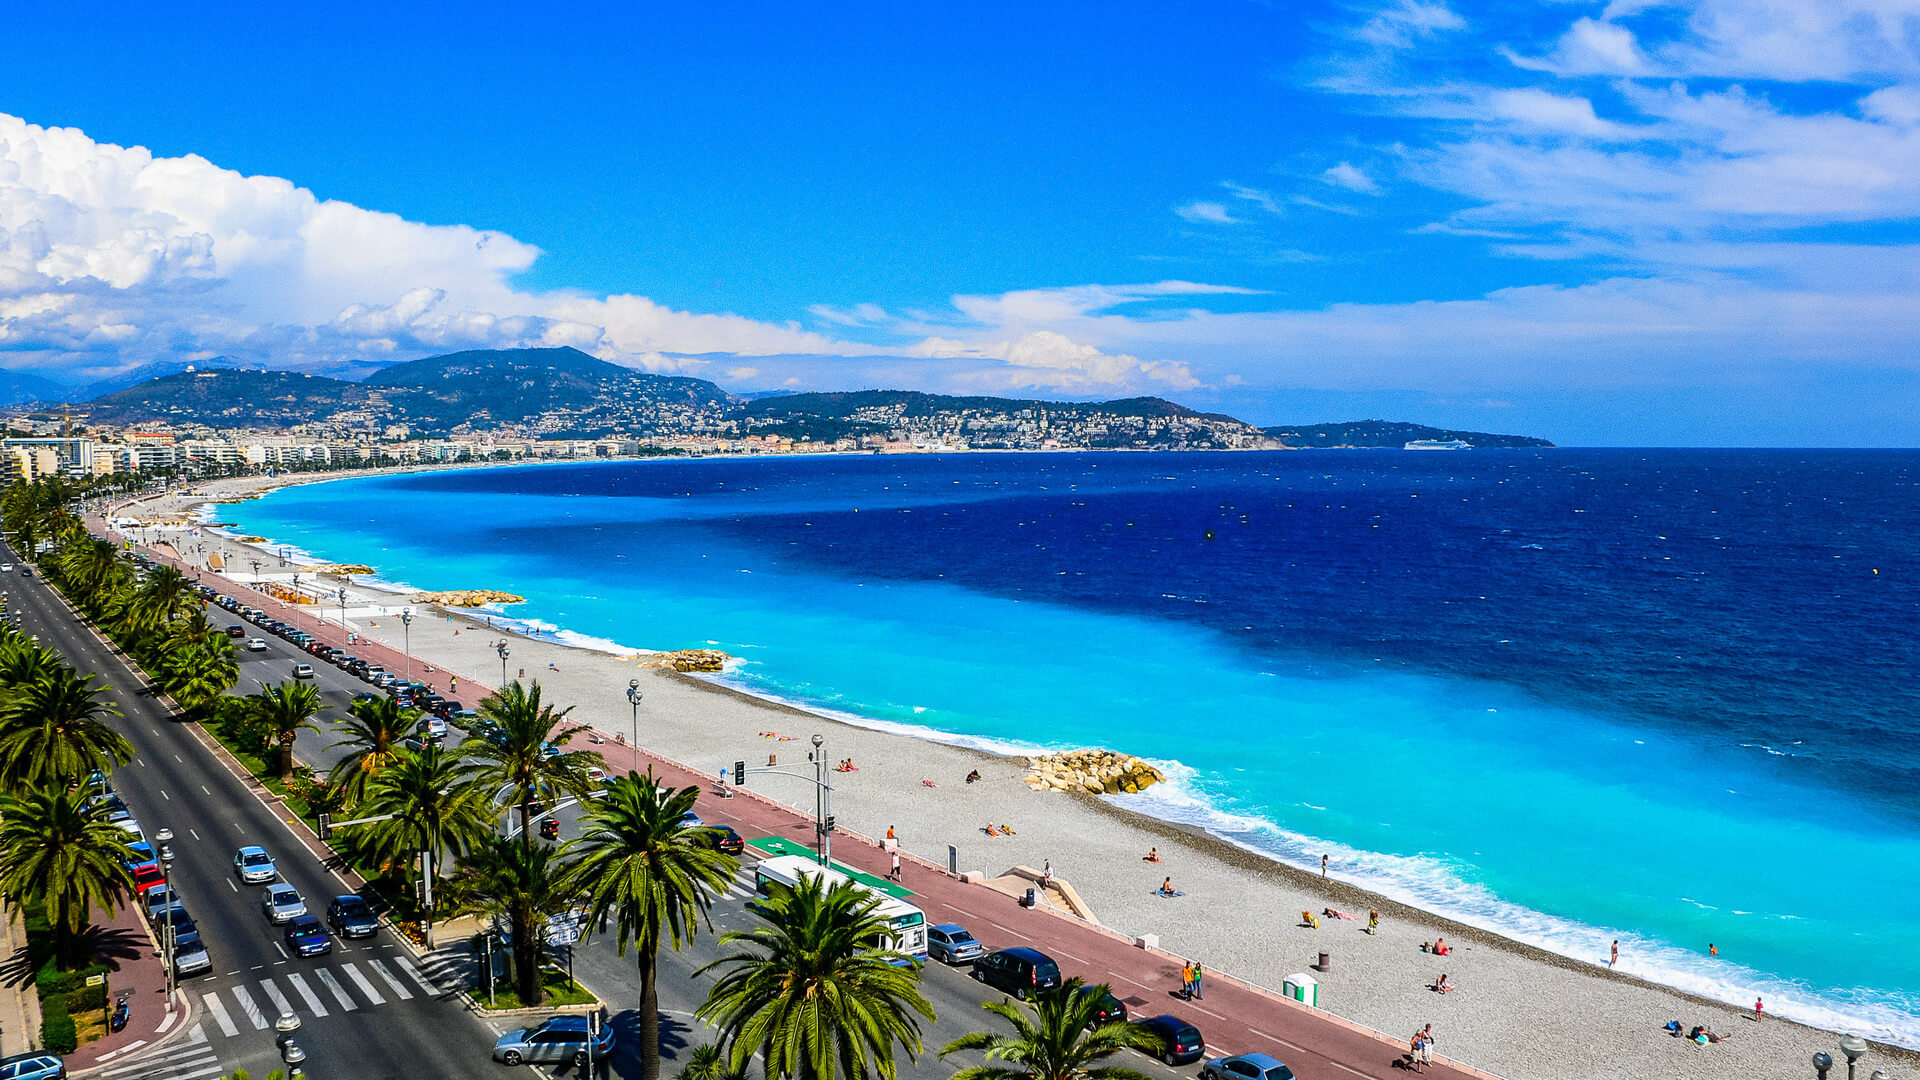 Vue de la plage dans la ville de Nice, France